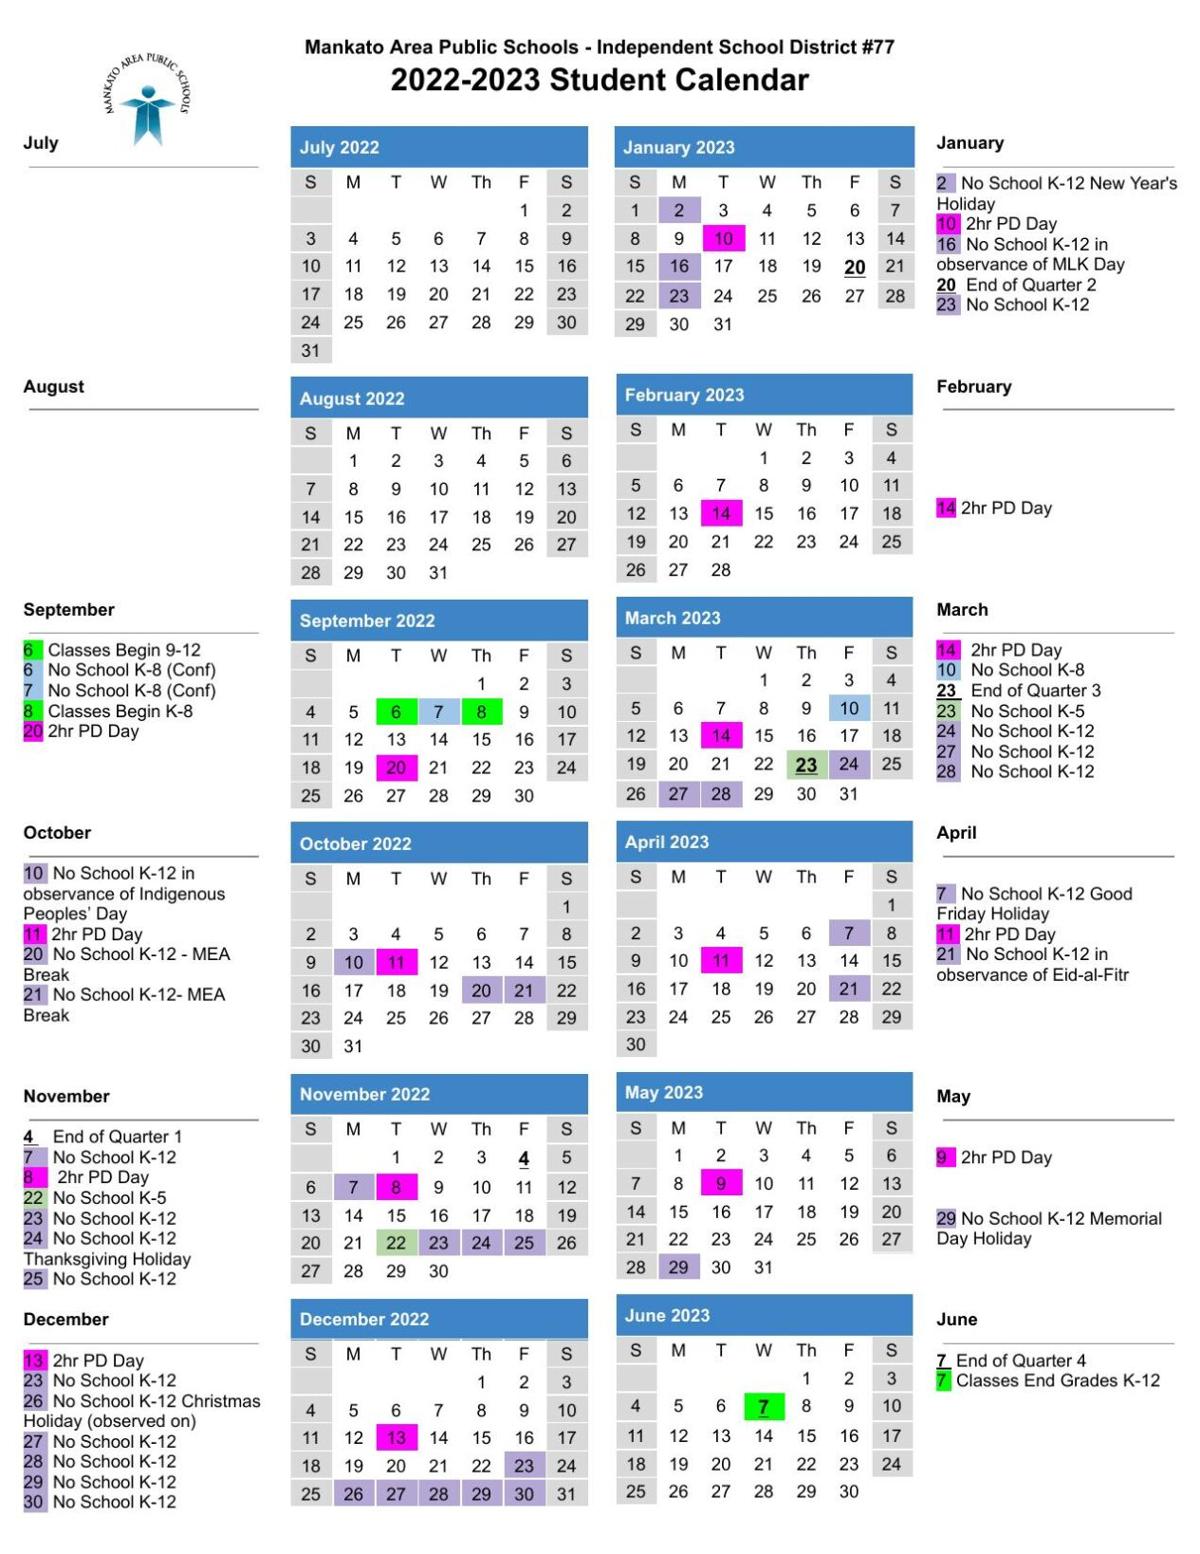 Doe Calendar 2022 2023 2022-2023 School Calendar | | Mankatofreepress.com